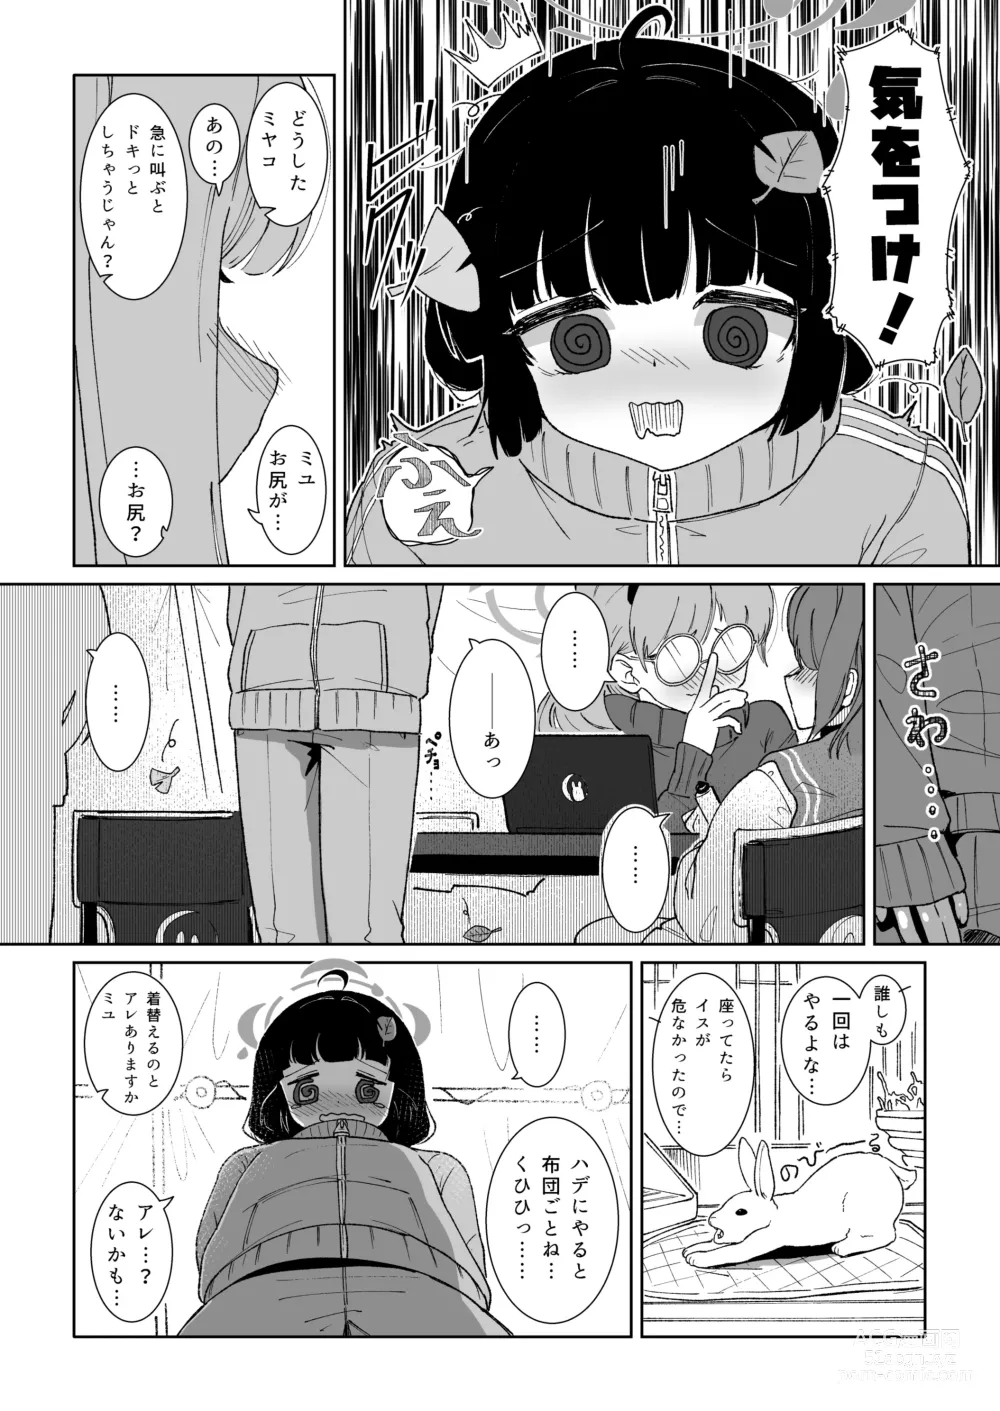 Page 4 of doujinshi Miyu no Otsukisama Jijou - Rabbit 4 Menstruation and Sex Affair